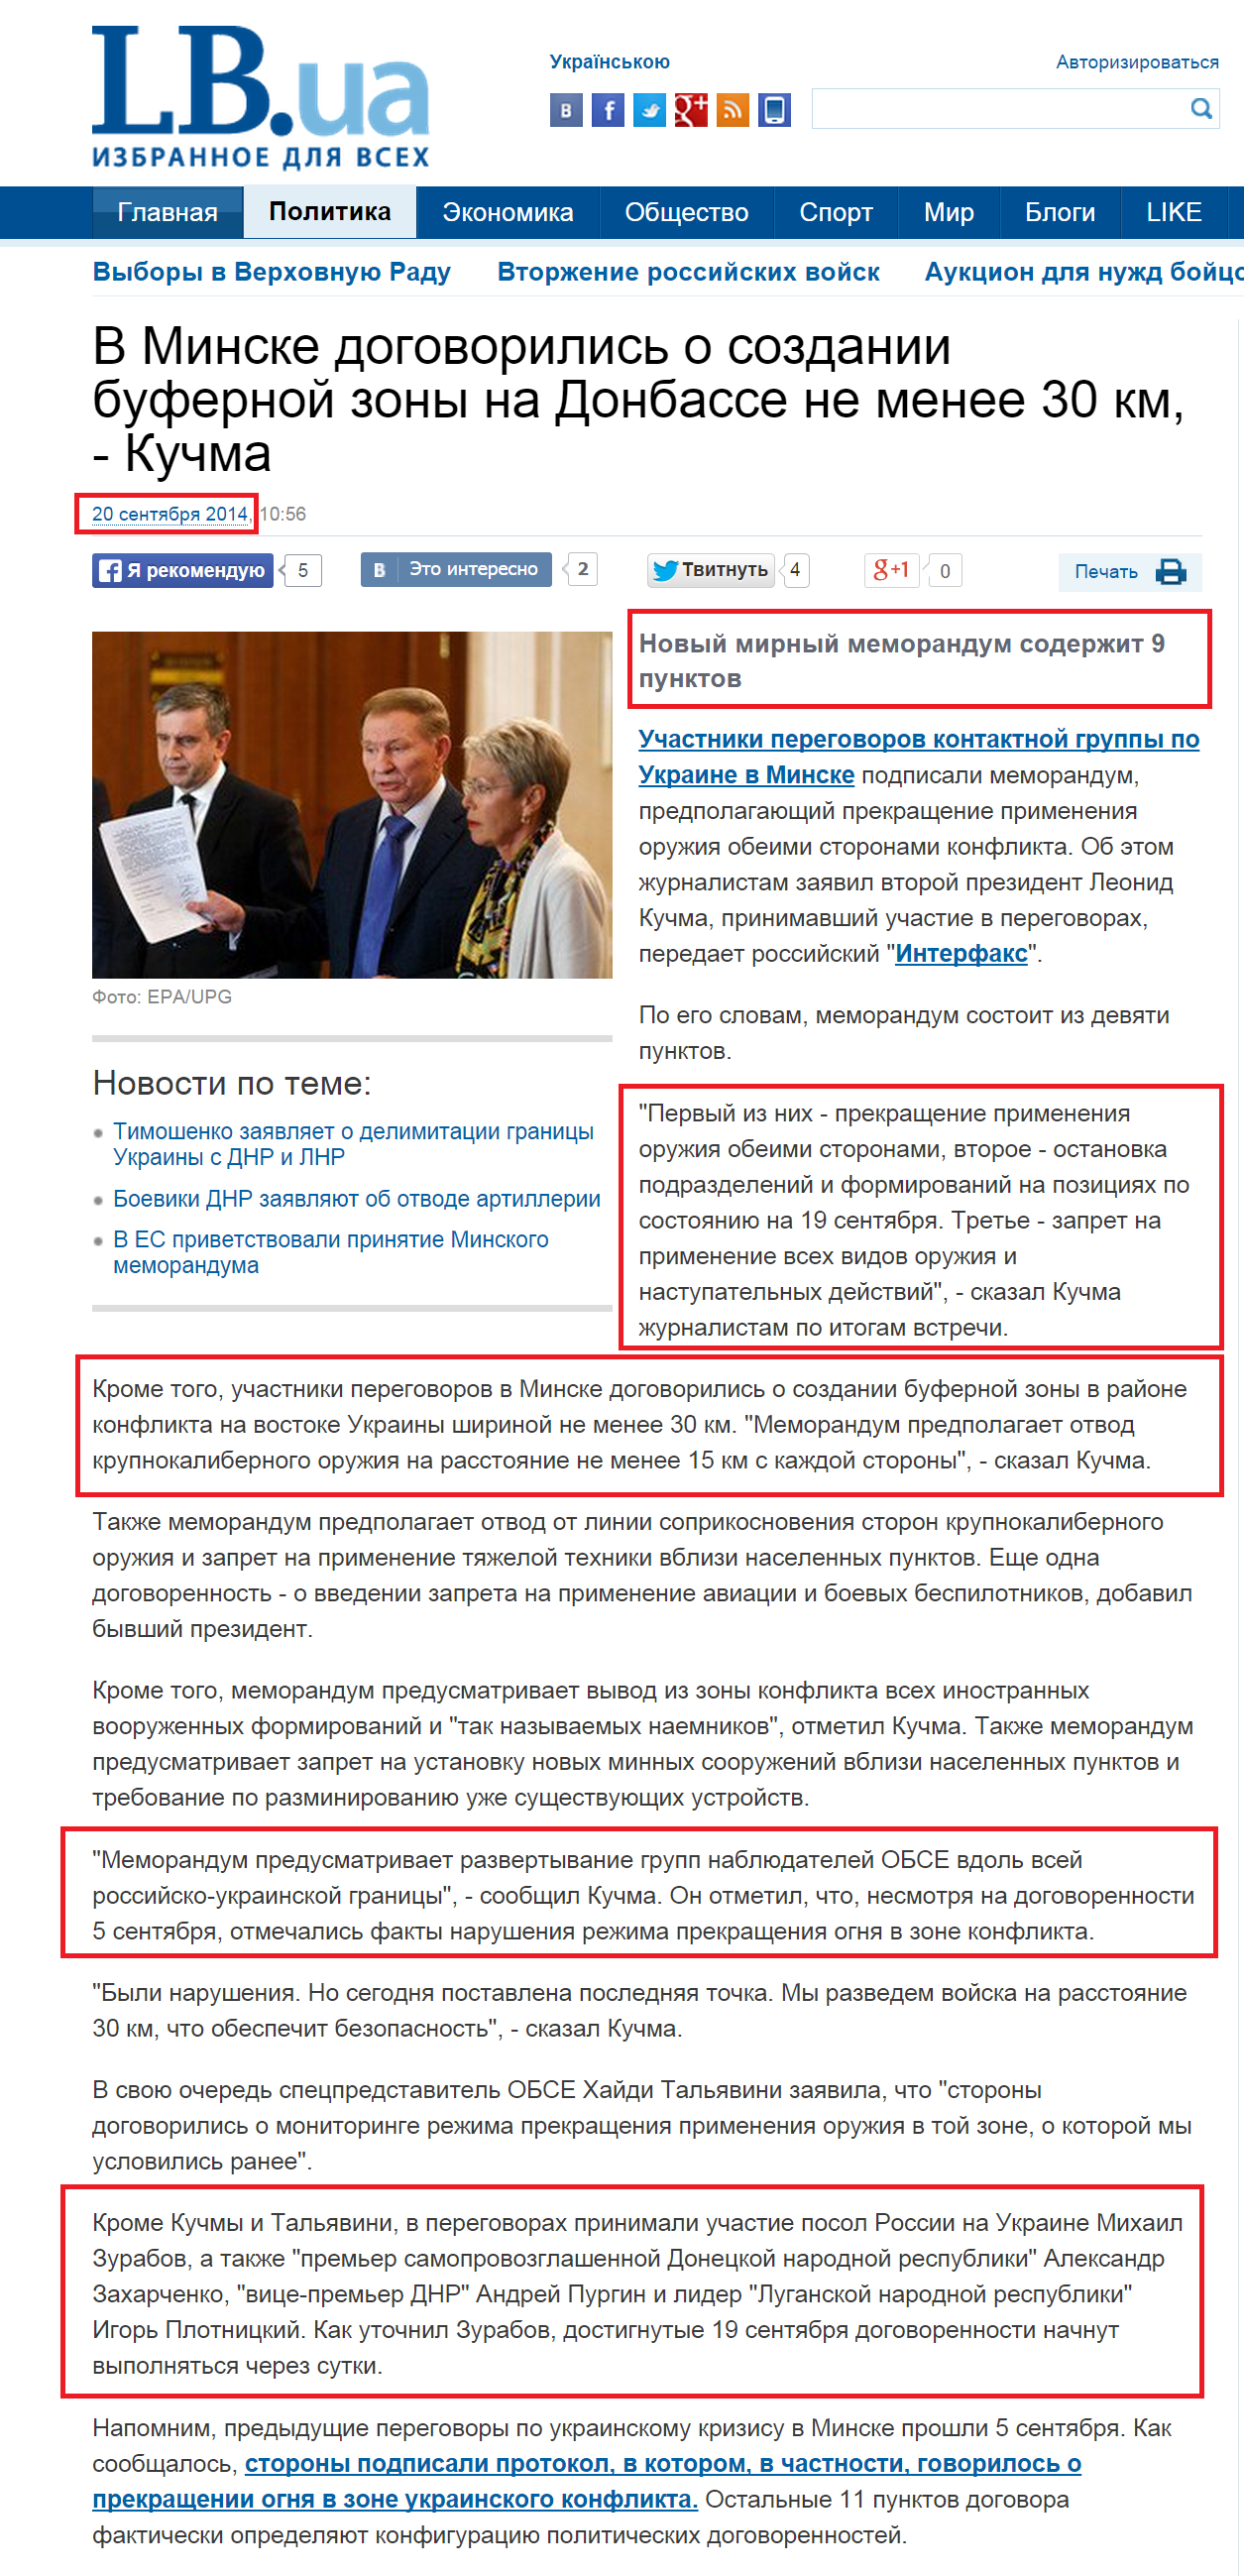 http://lb.ua/news/2014/09/20/280019_uchastniki_peregovorov_minske.html